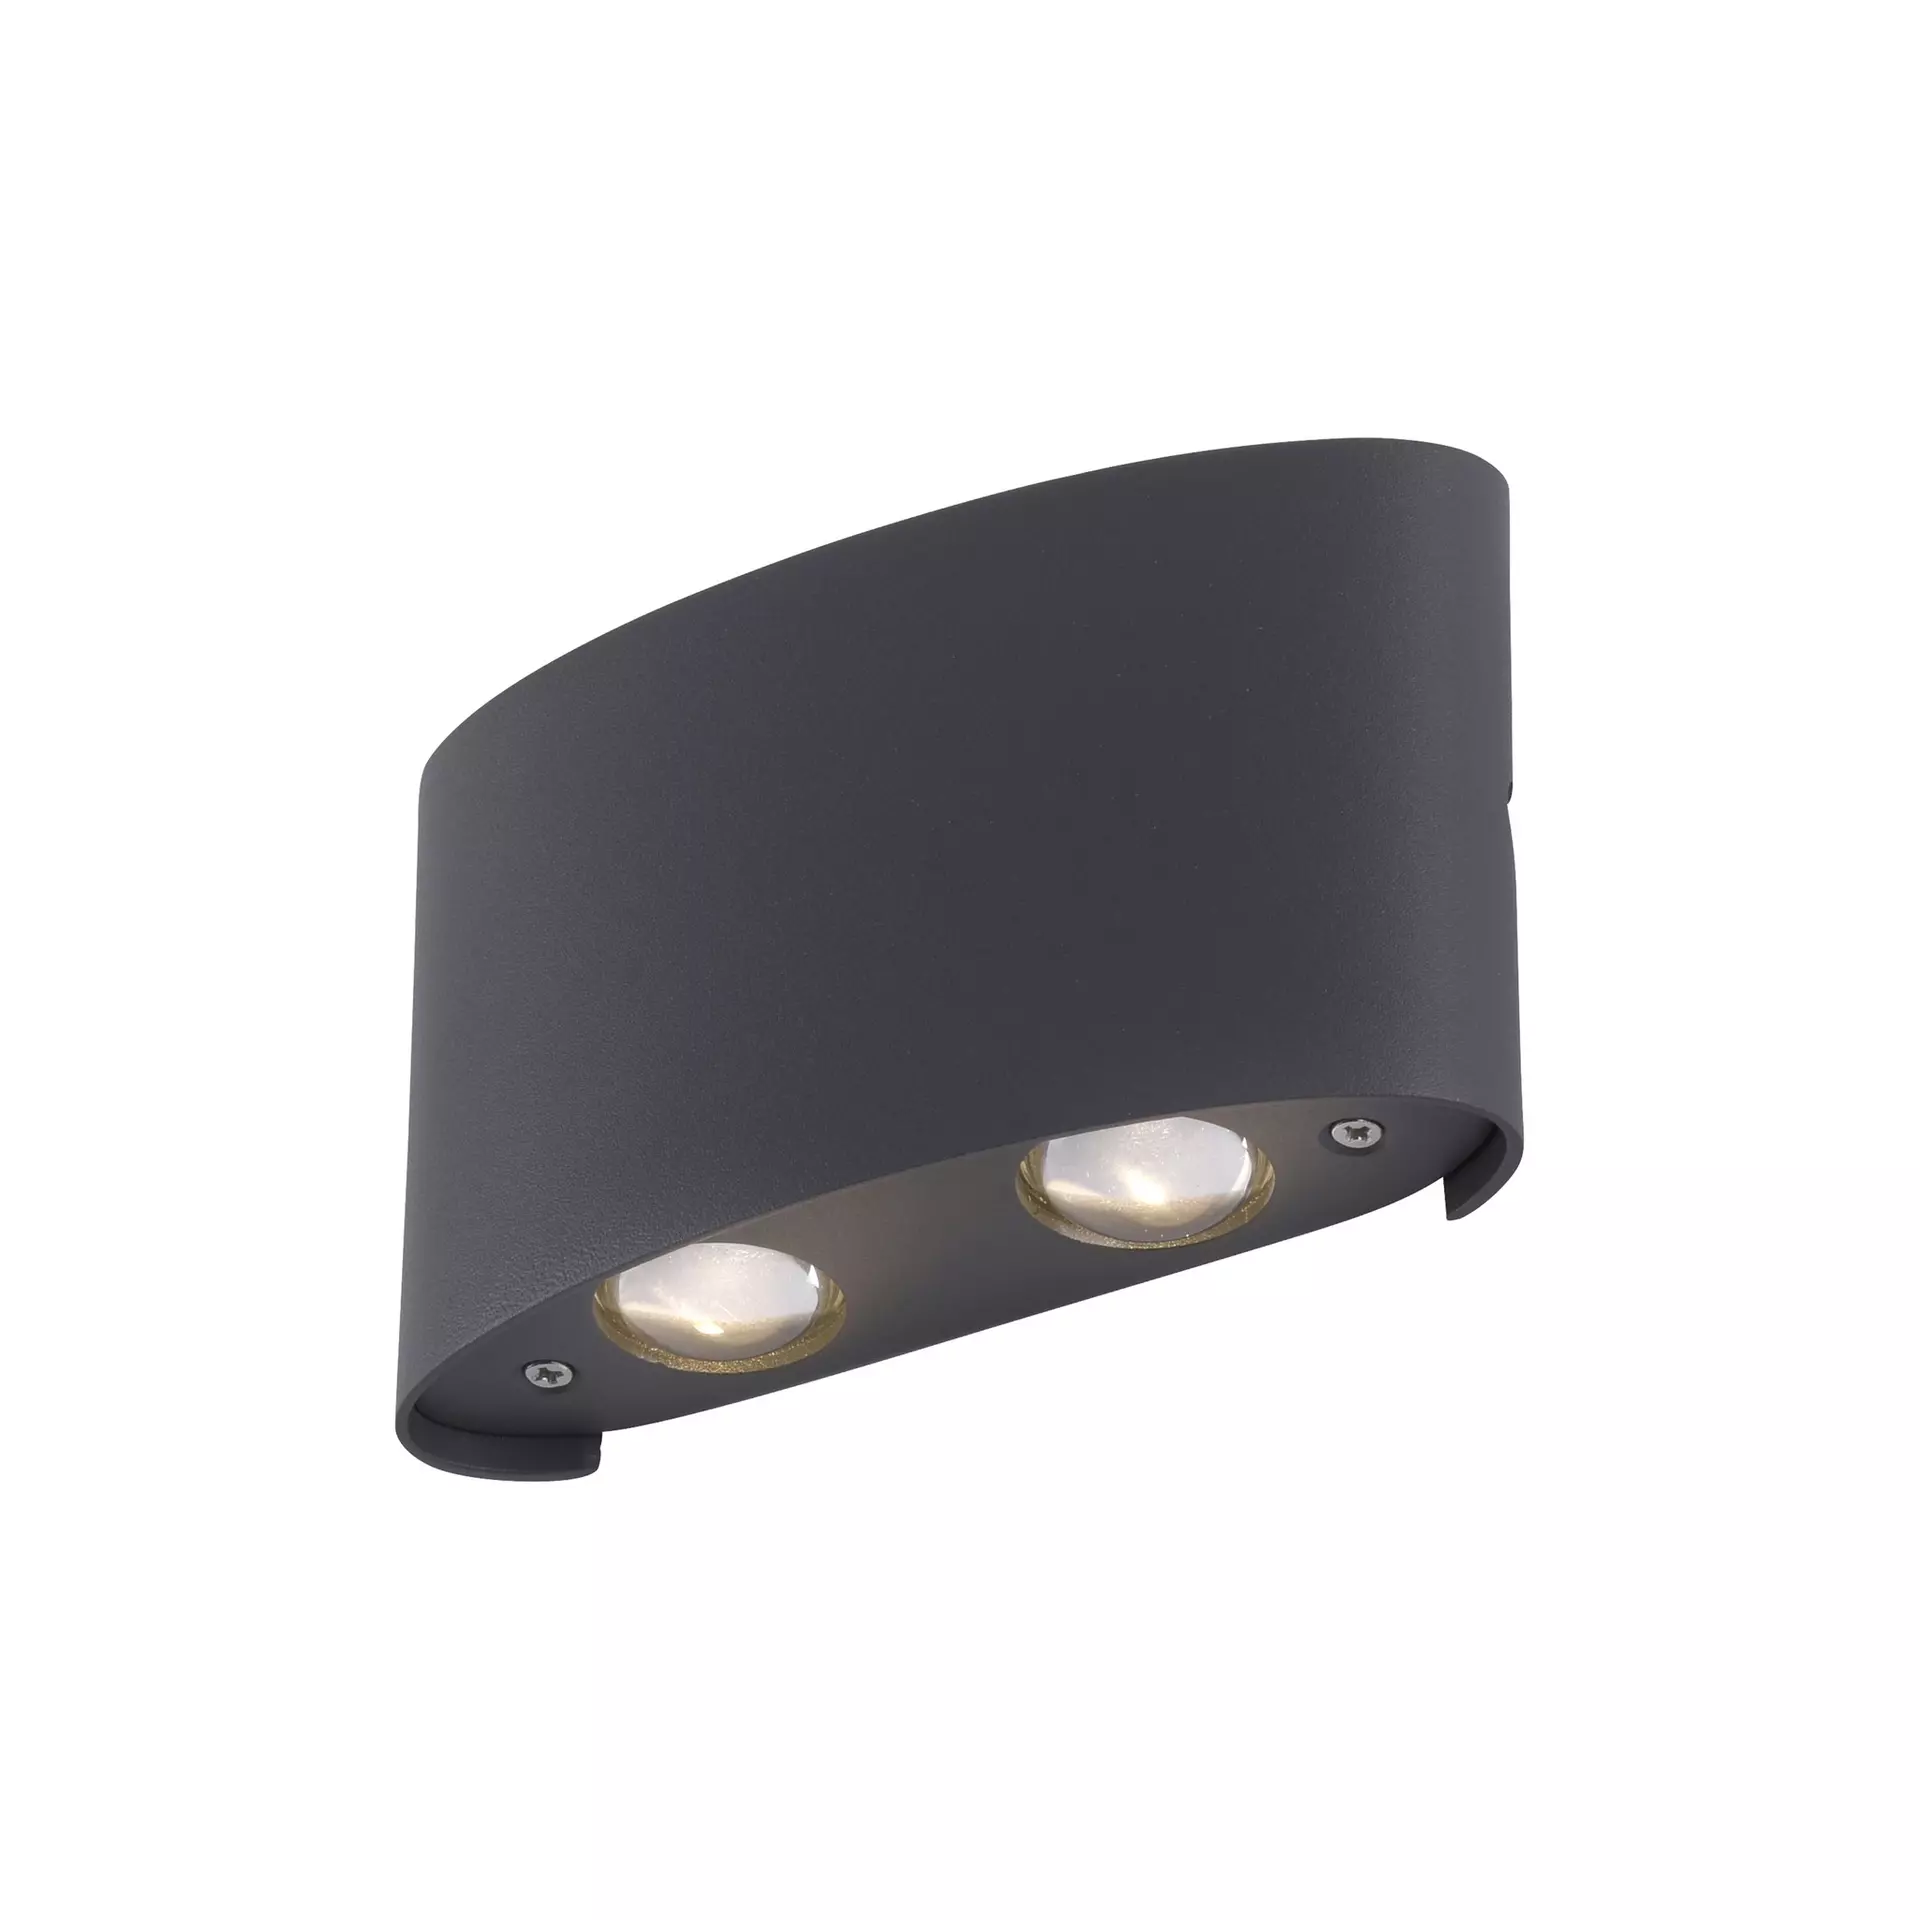 Wand-Aussenleuchte LED Inhofer schwarz Möbel 